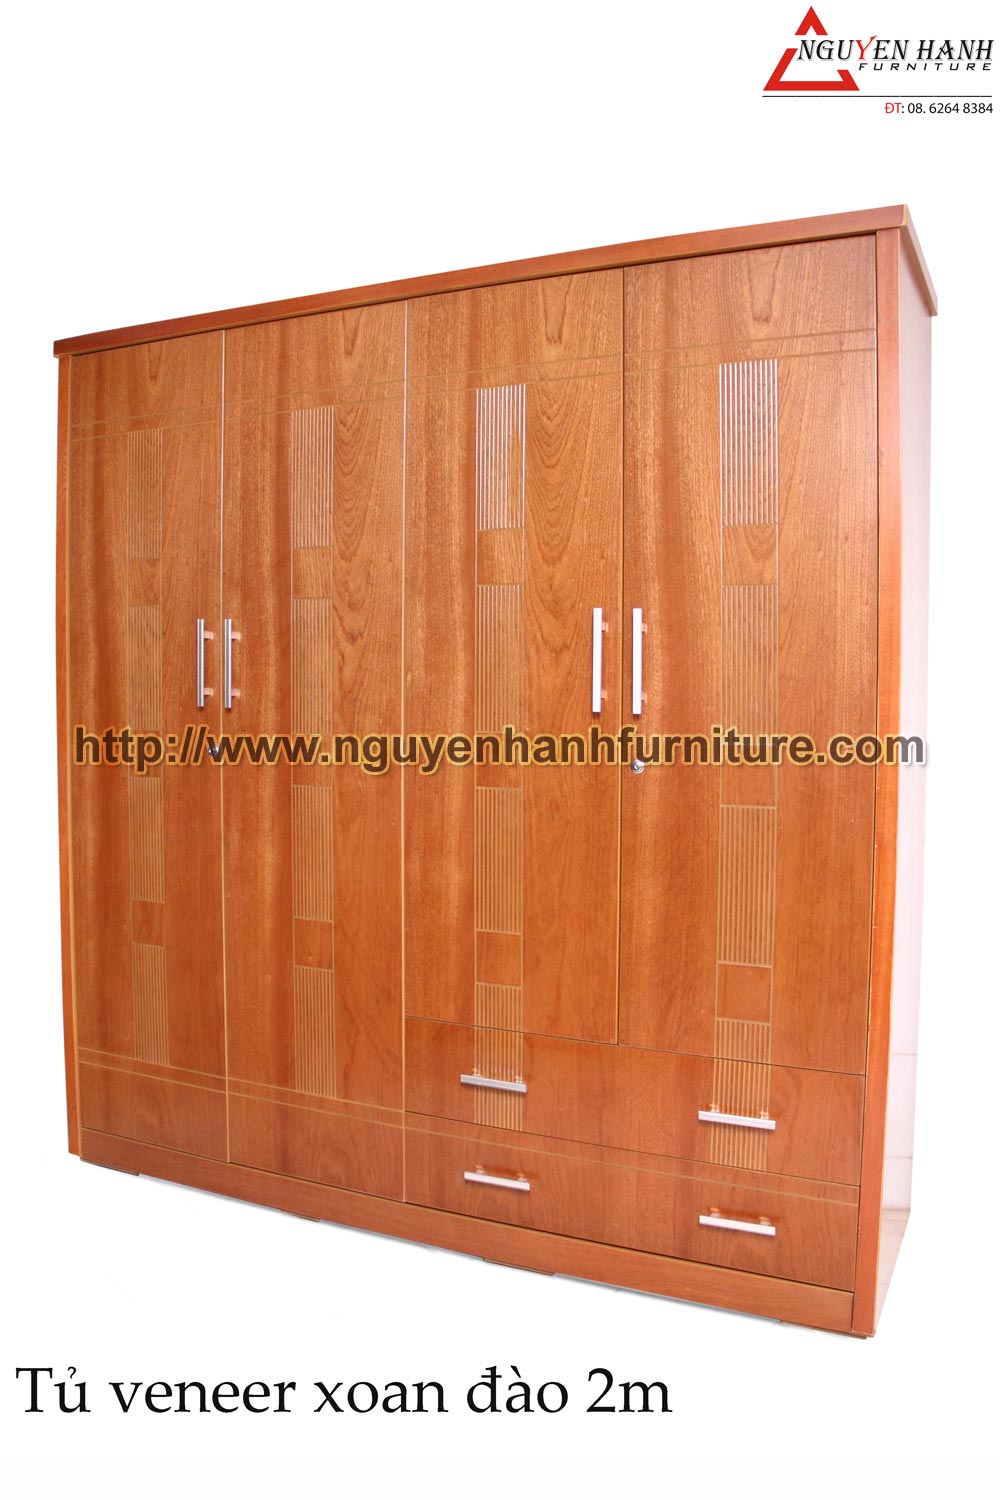 Name product: 2m Wardrobe of veneer Rosewood - Dimensions: 58 x 200 x 210cm - Description: Veneer bead tree wood